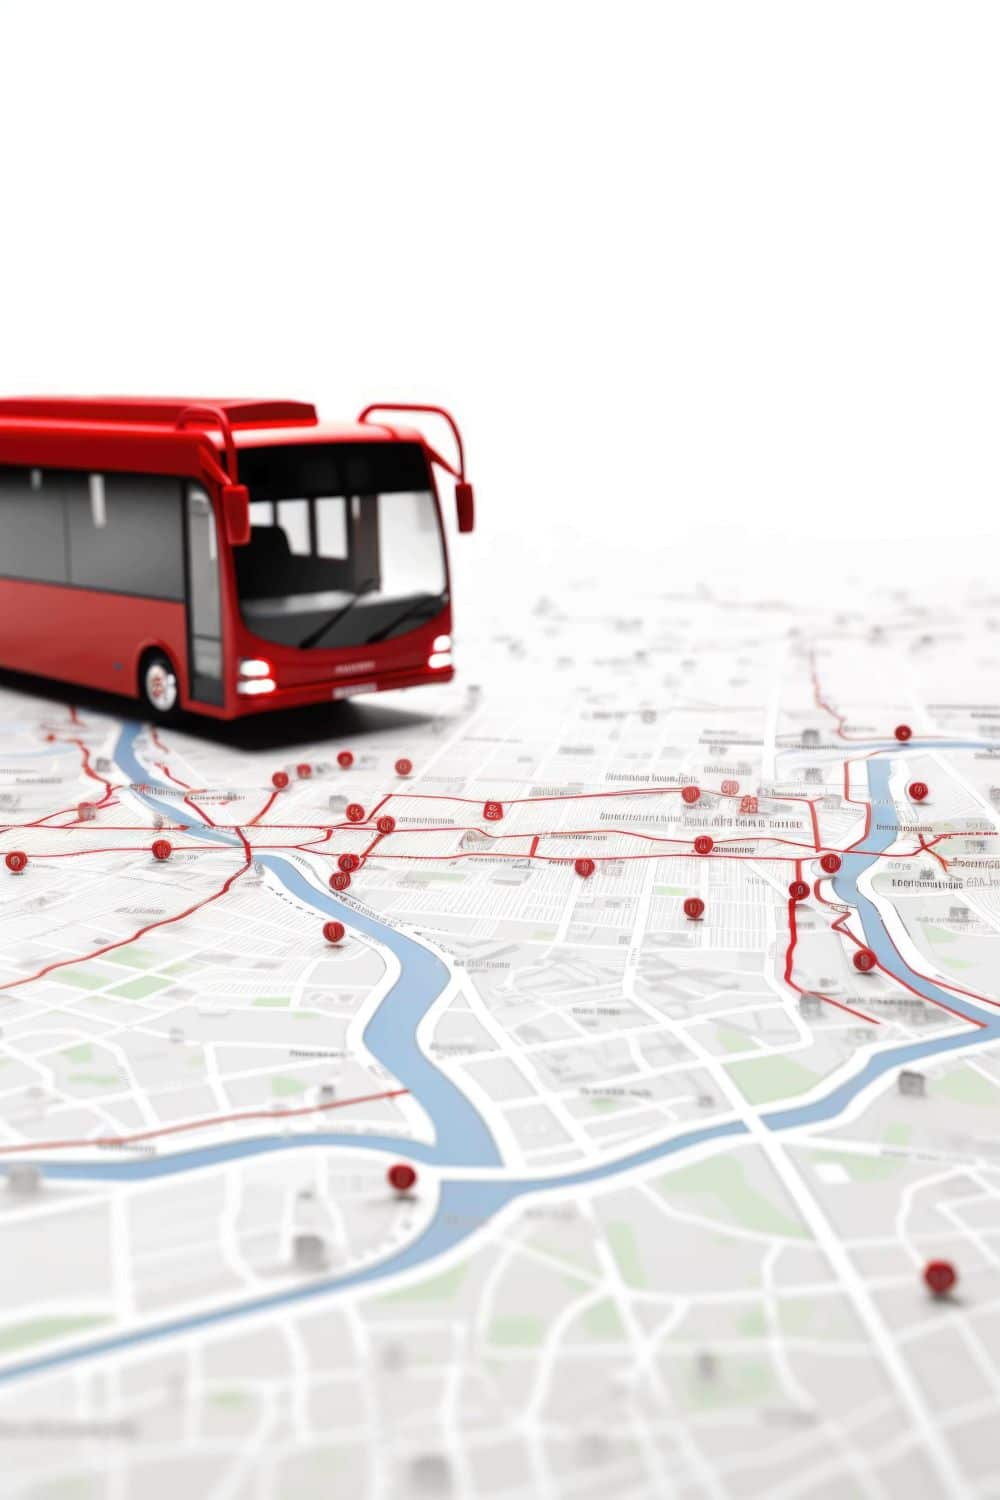 planification itinéraire transports public bus